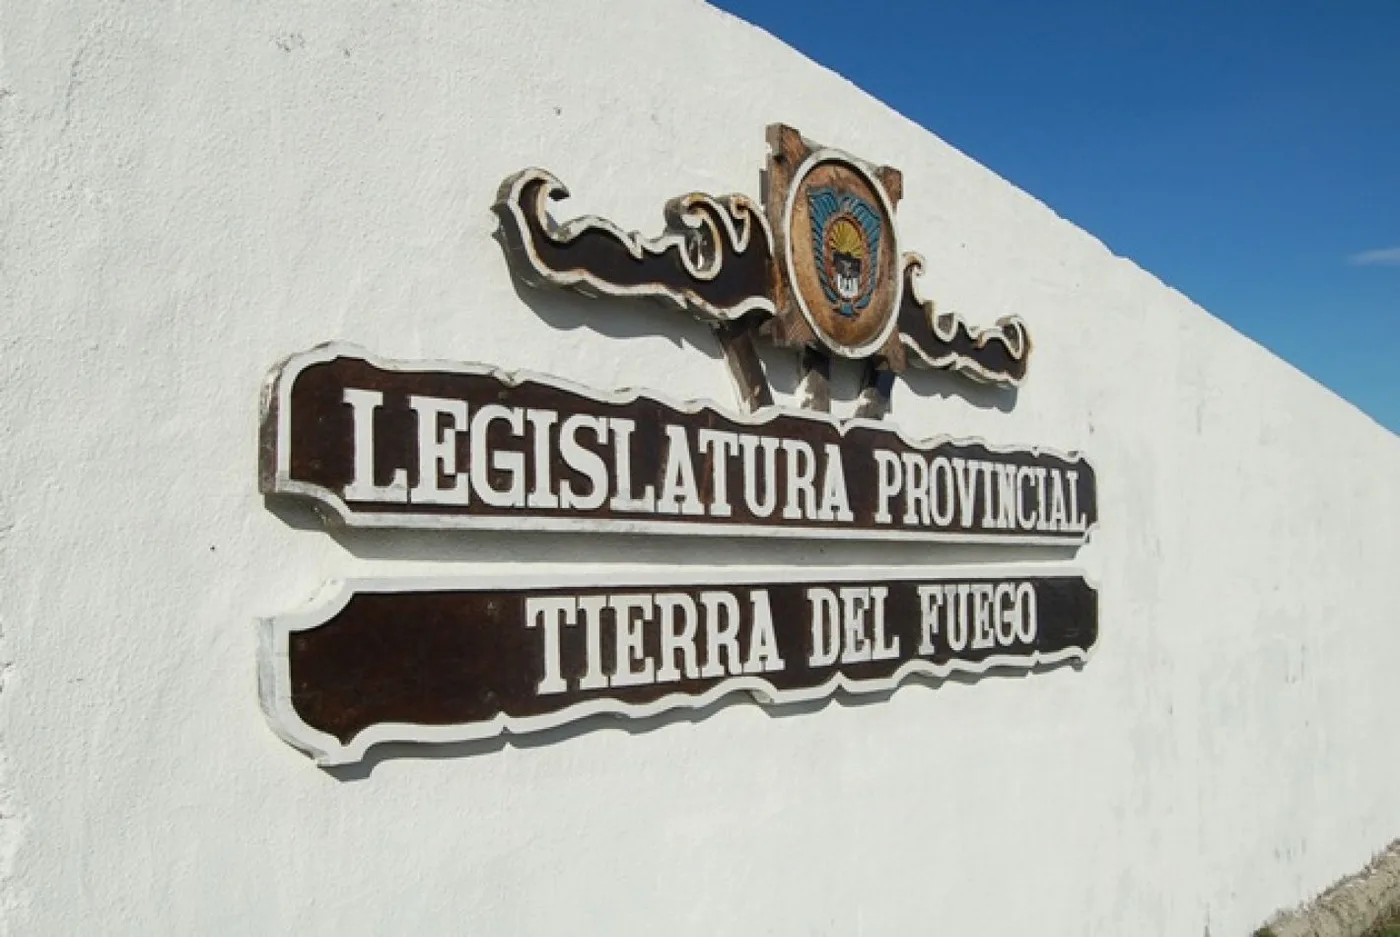 Legislatura Provincial